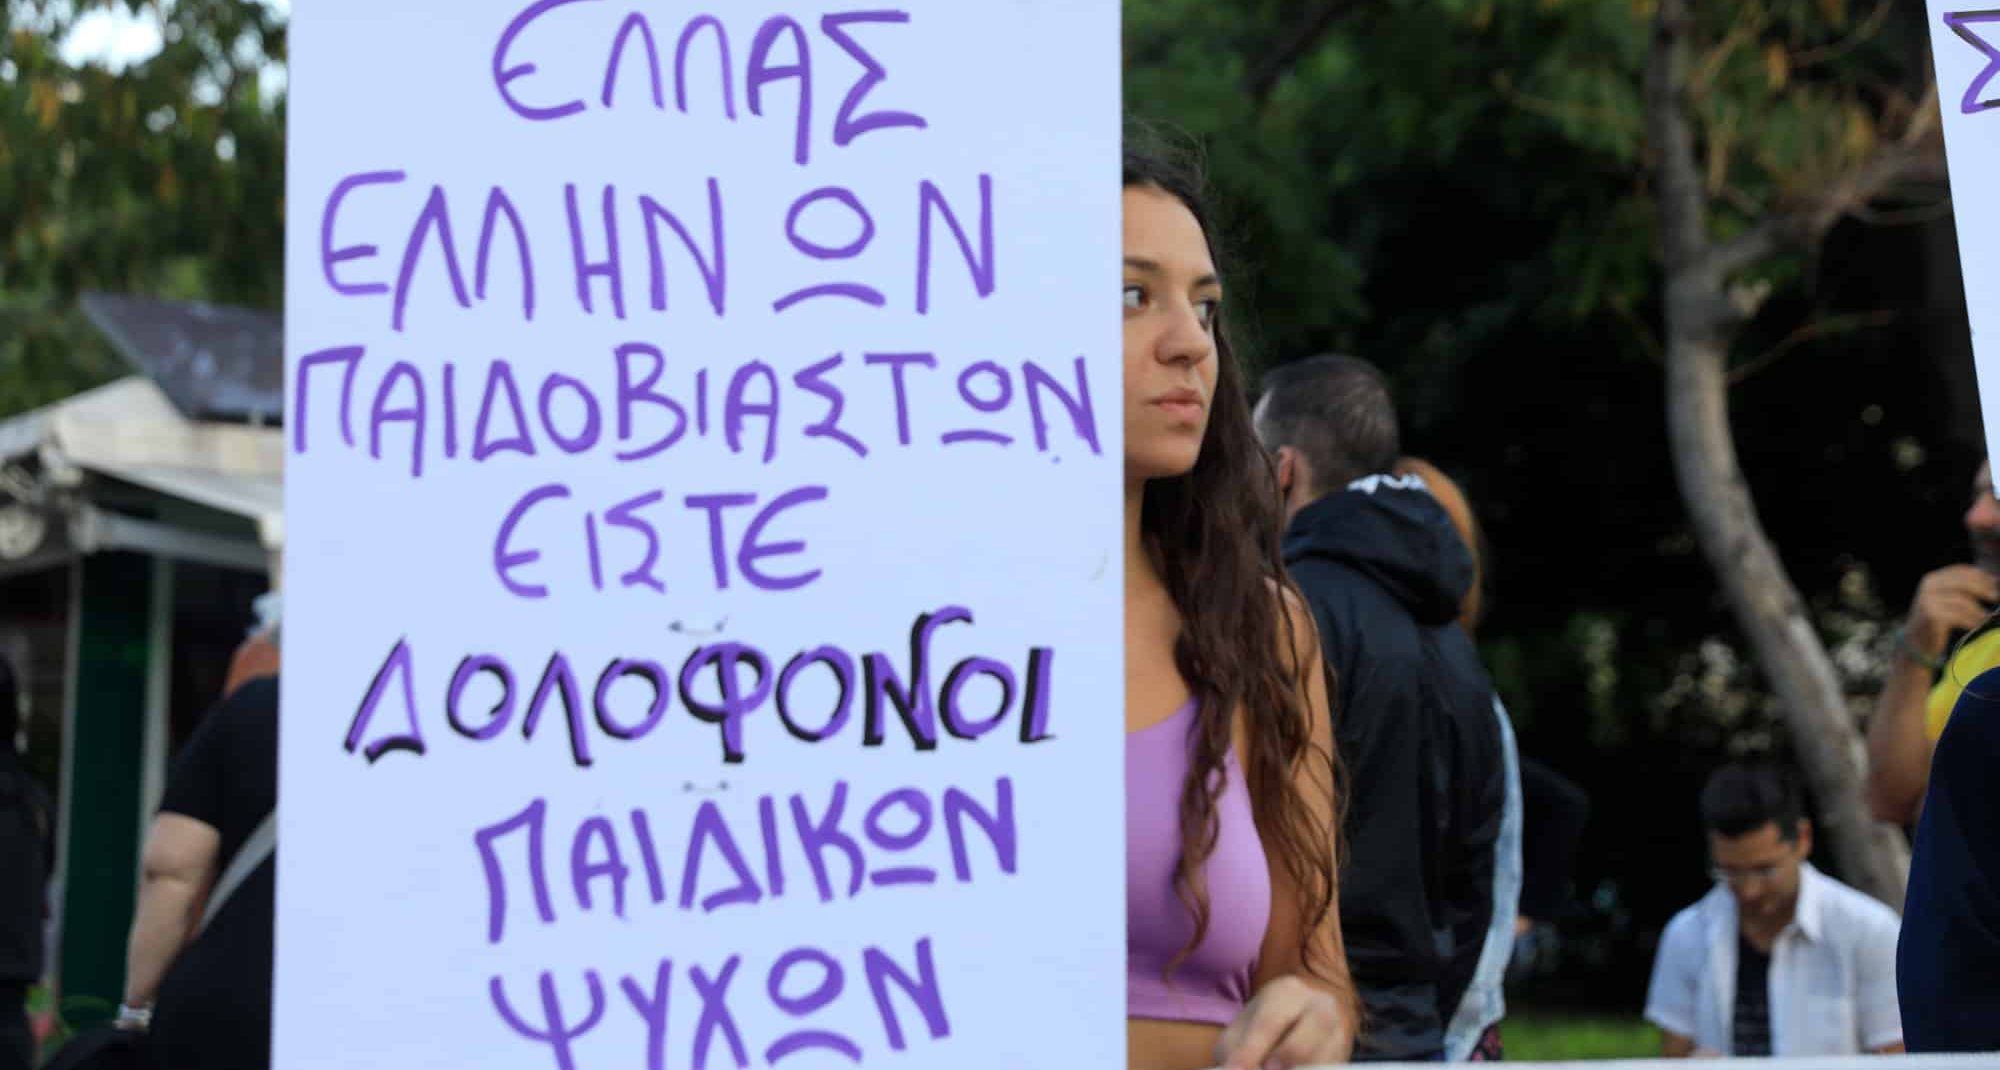 Συγκέντρωση διαμαρτυρίας για την υπόθεση παιδοβιασμού και trafficking στα Σεπόλια